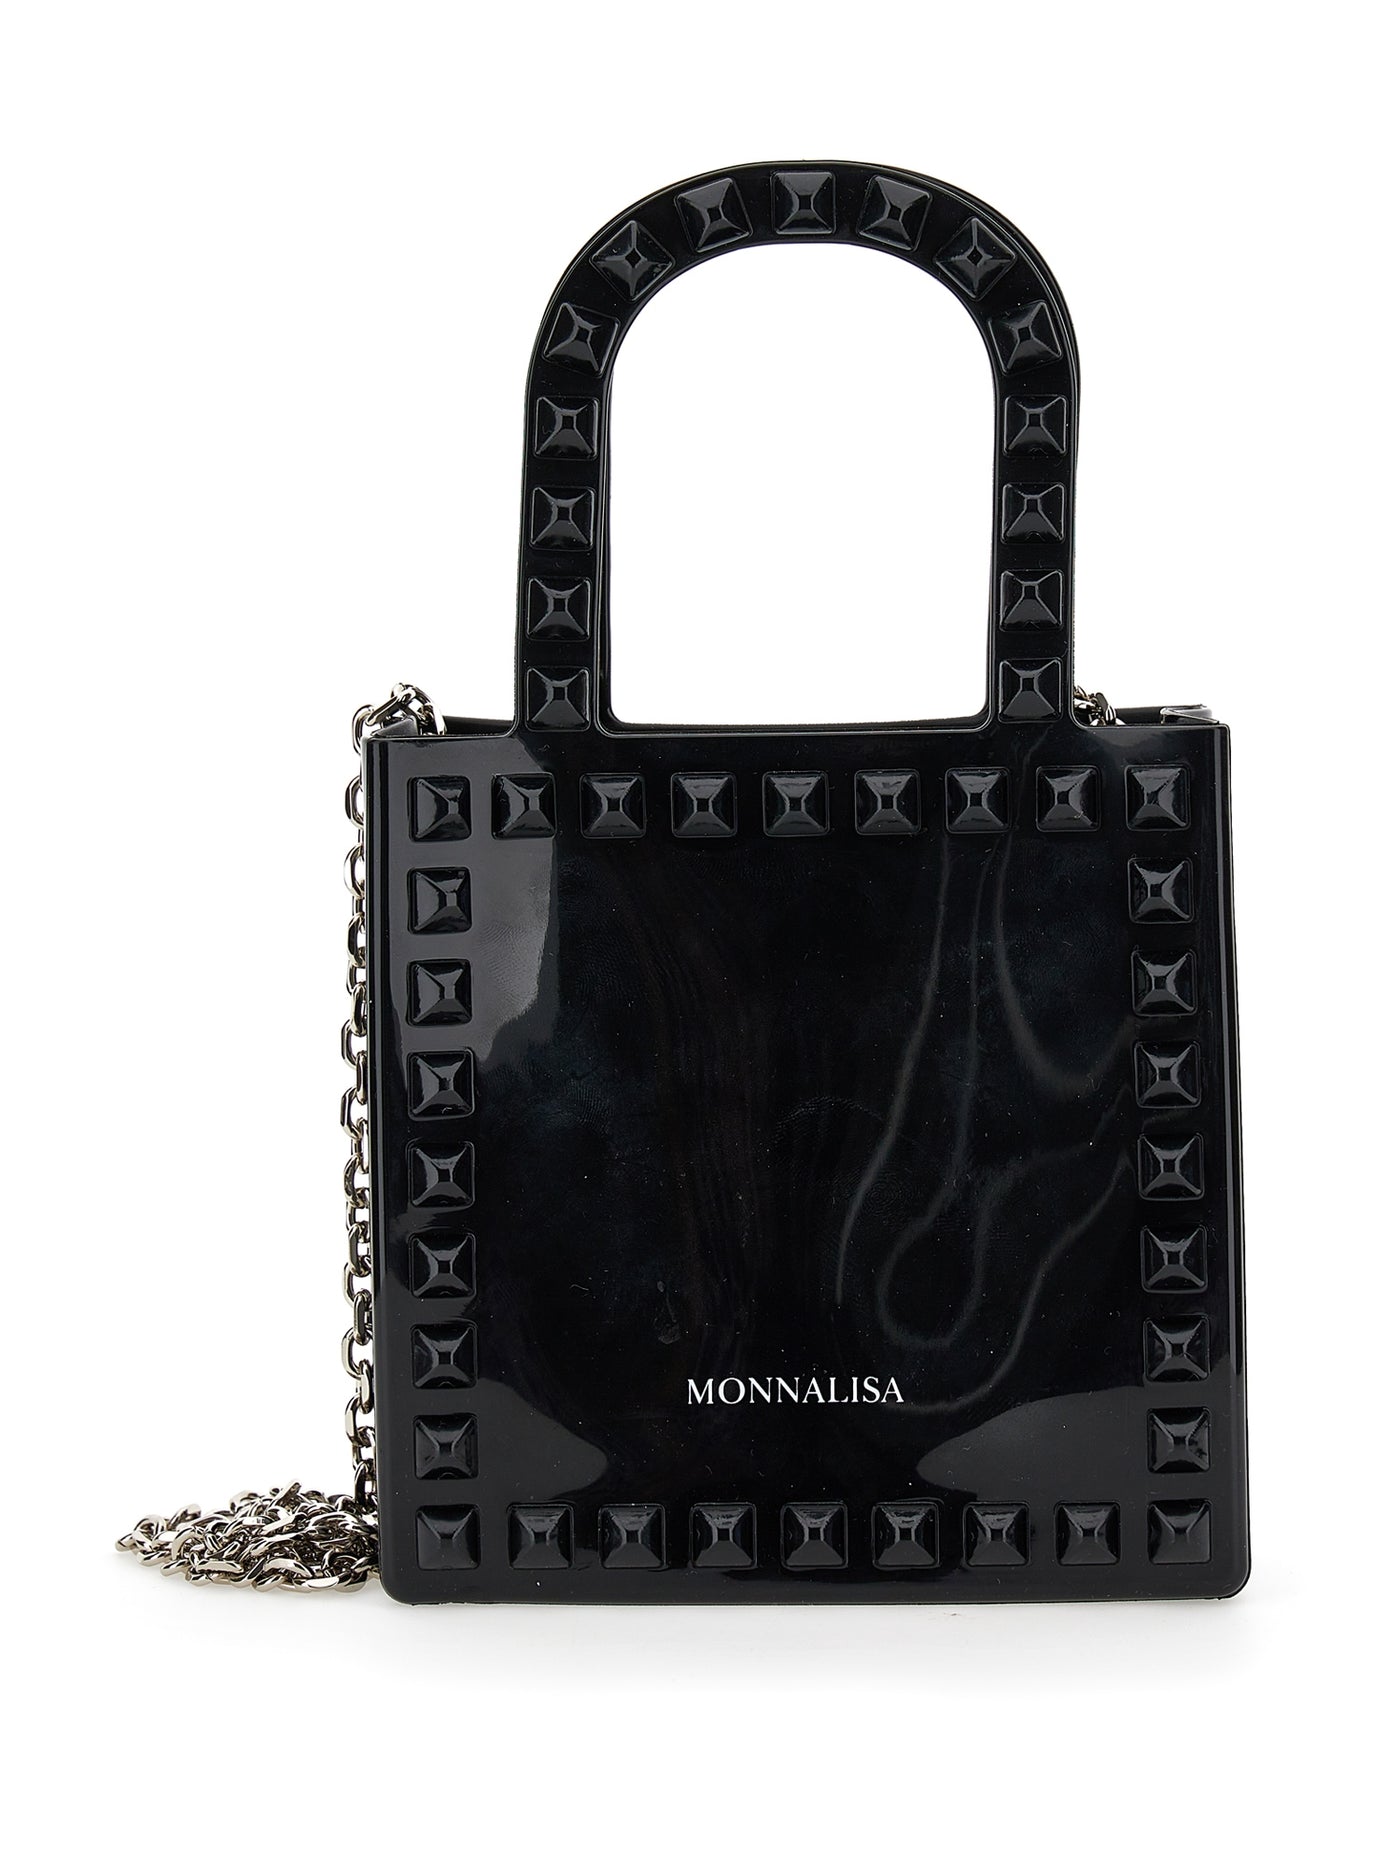 Monnalisa - PVC shopper-style minibag